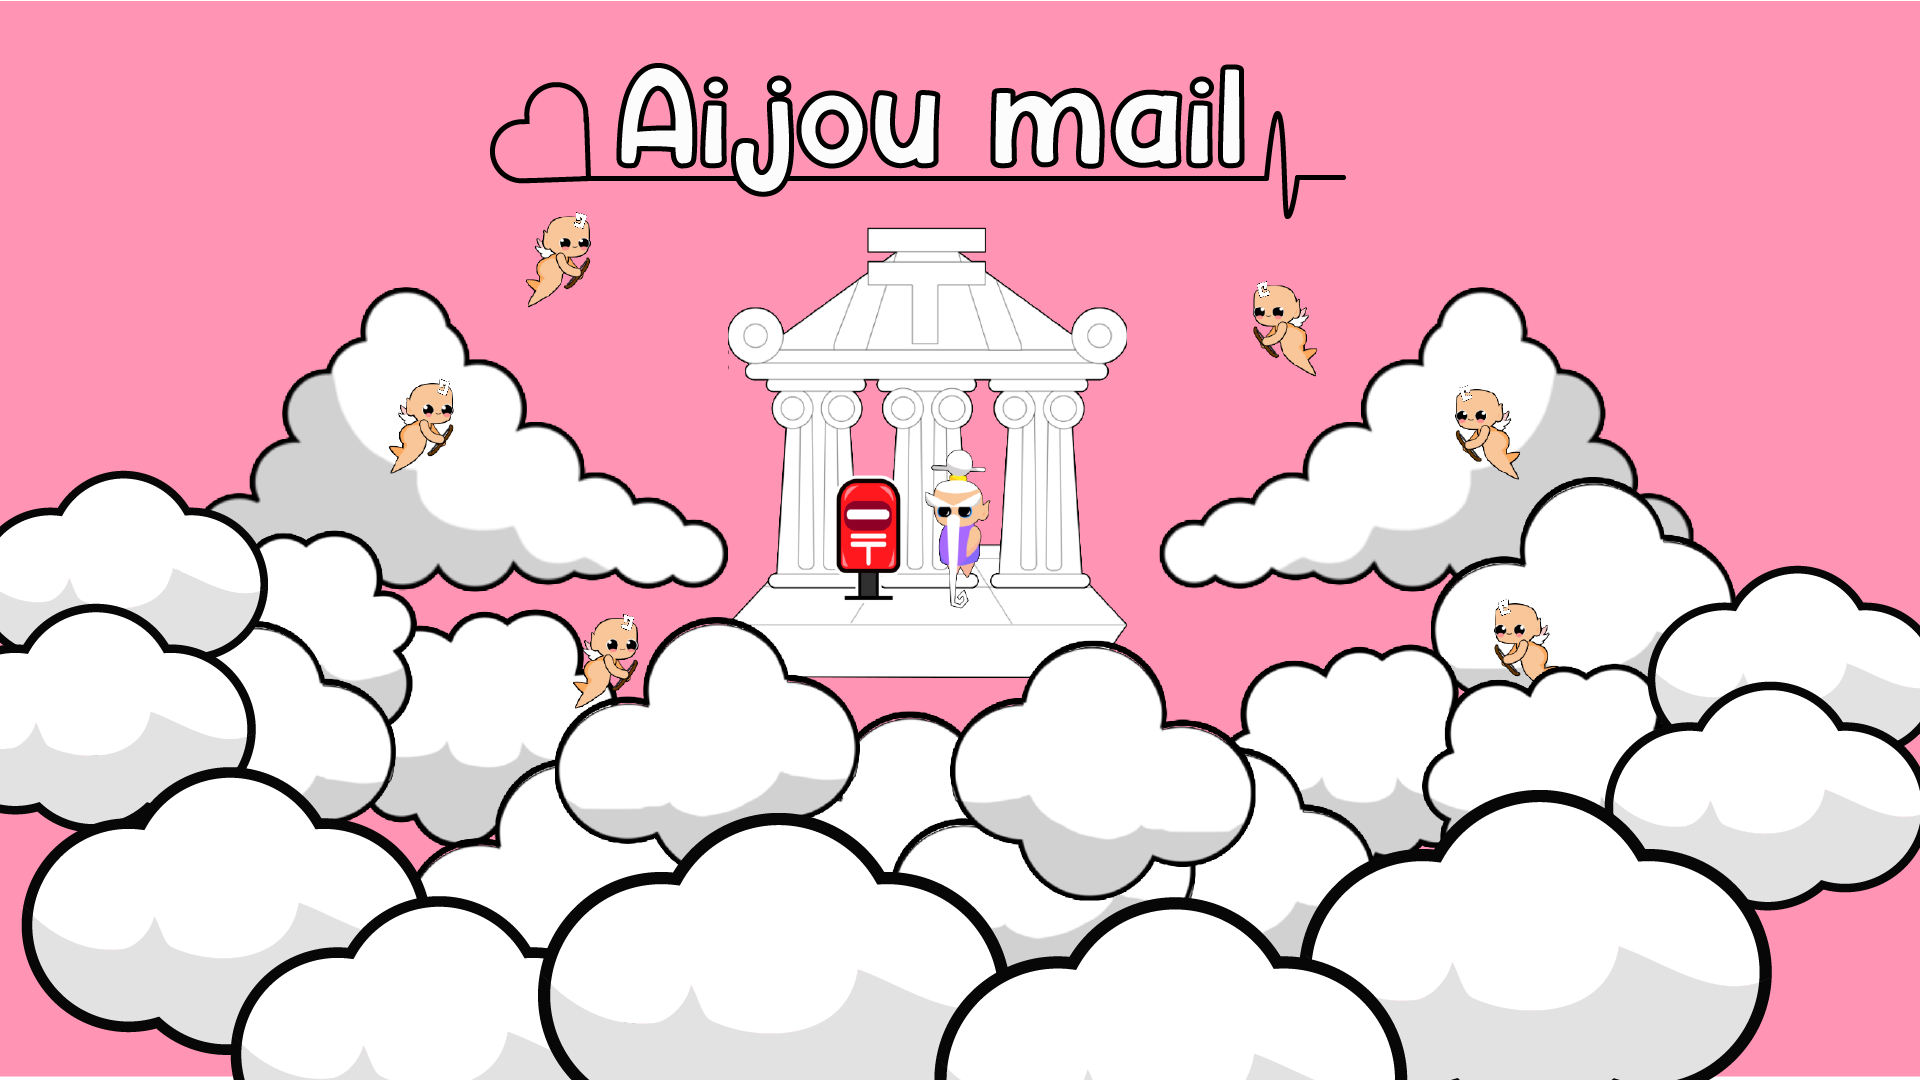 Aijou Mail